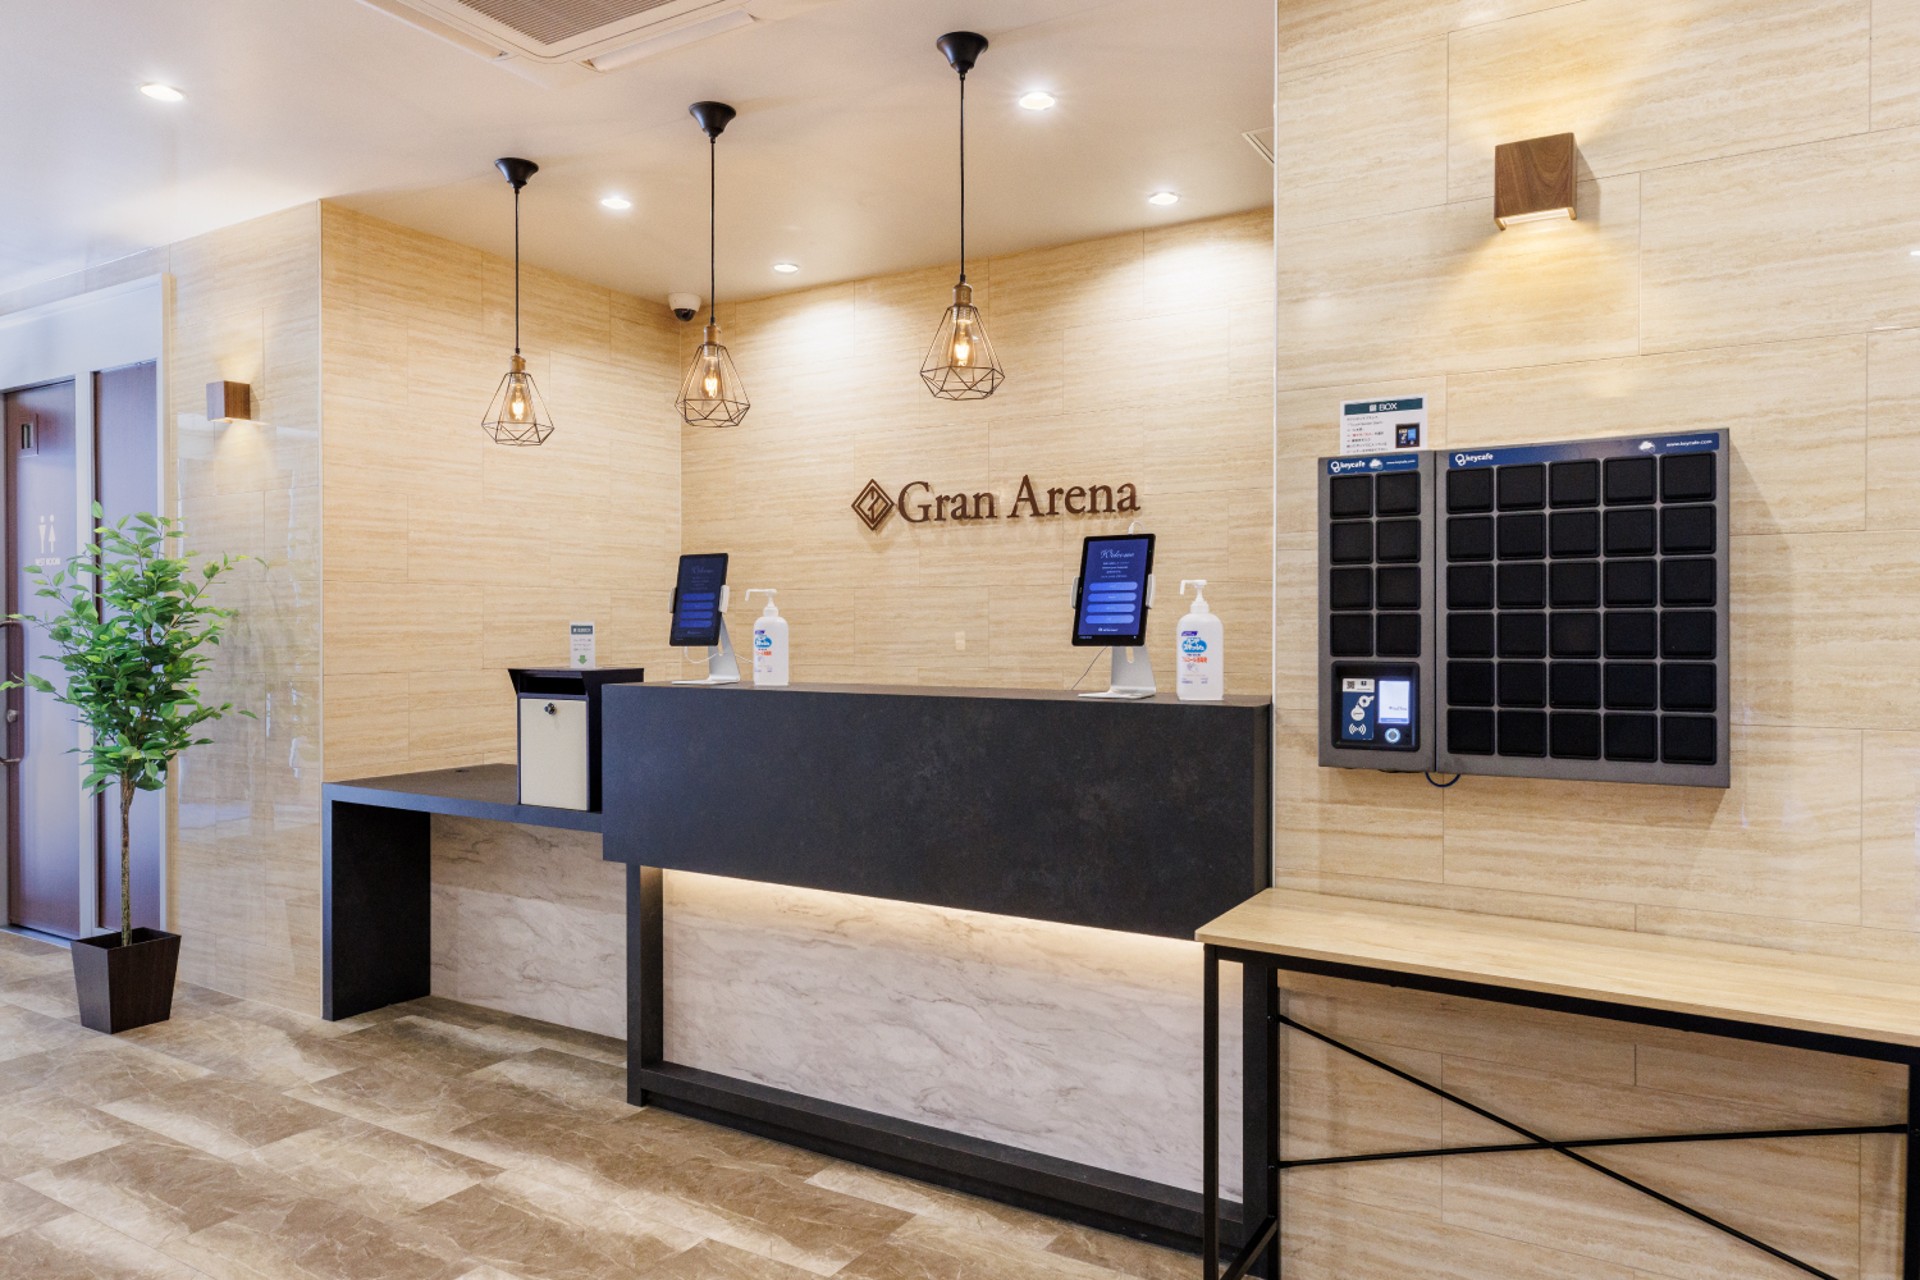 Hotel Gran Arena reduce costos y aumenta la satisfacción de los huéspedes con Keycafe